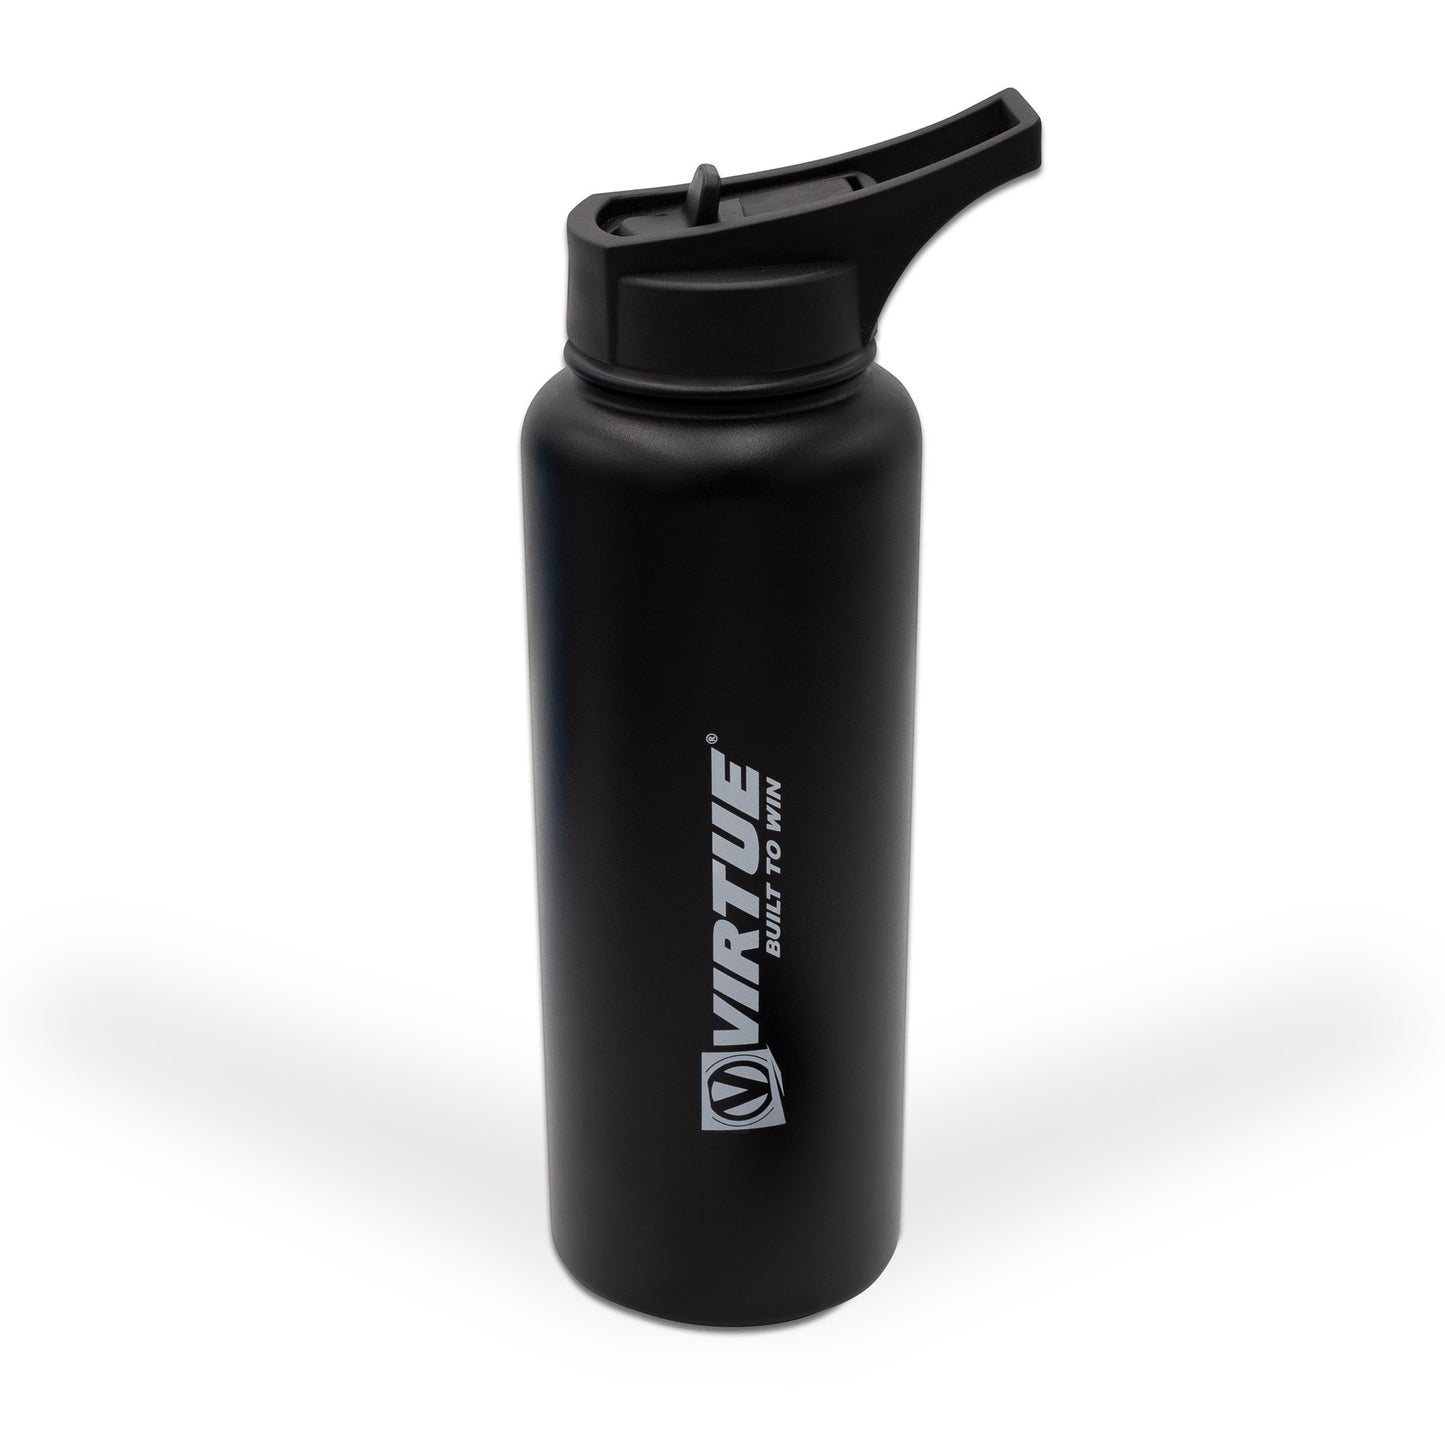 Ezprogear 25 oz Stainless Steel Water Bottle with 3 Lids (Black